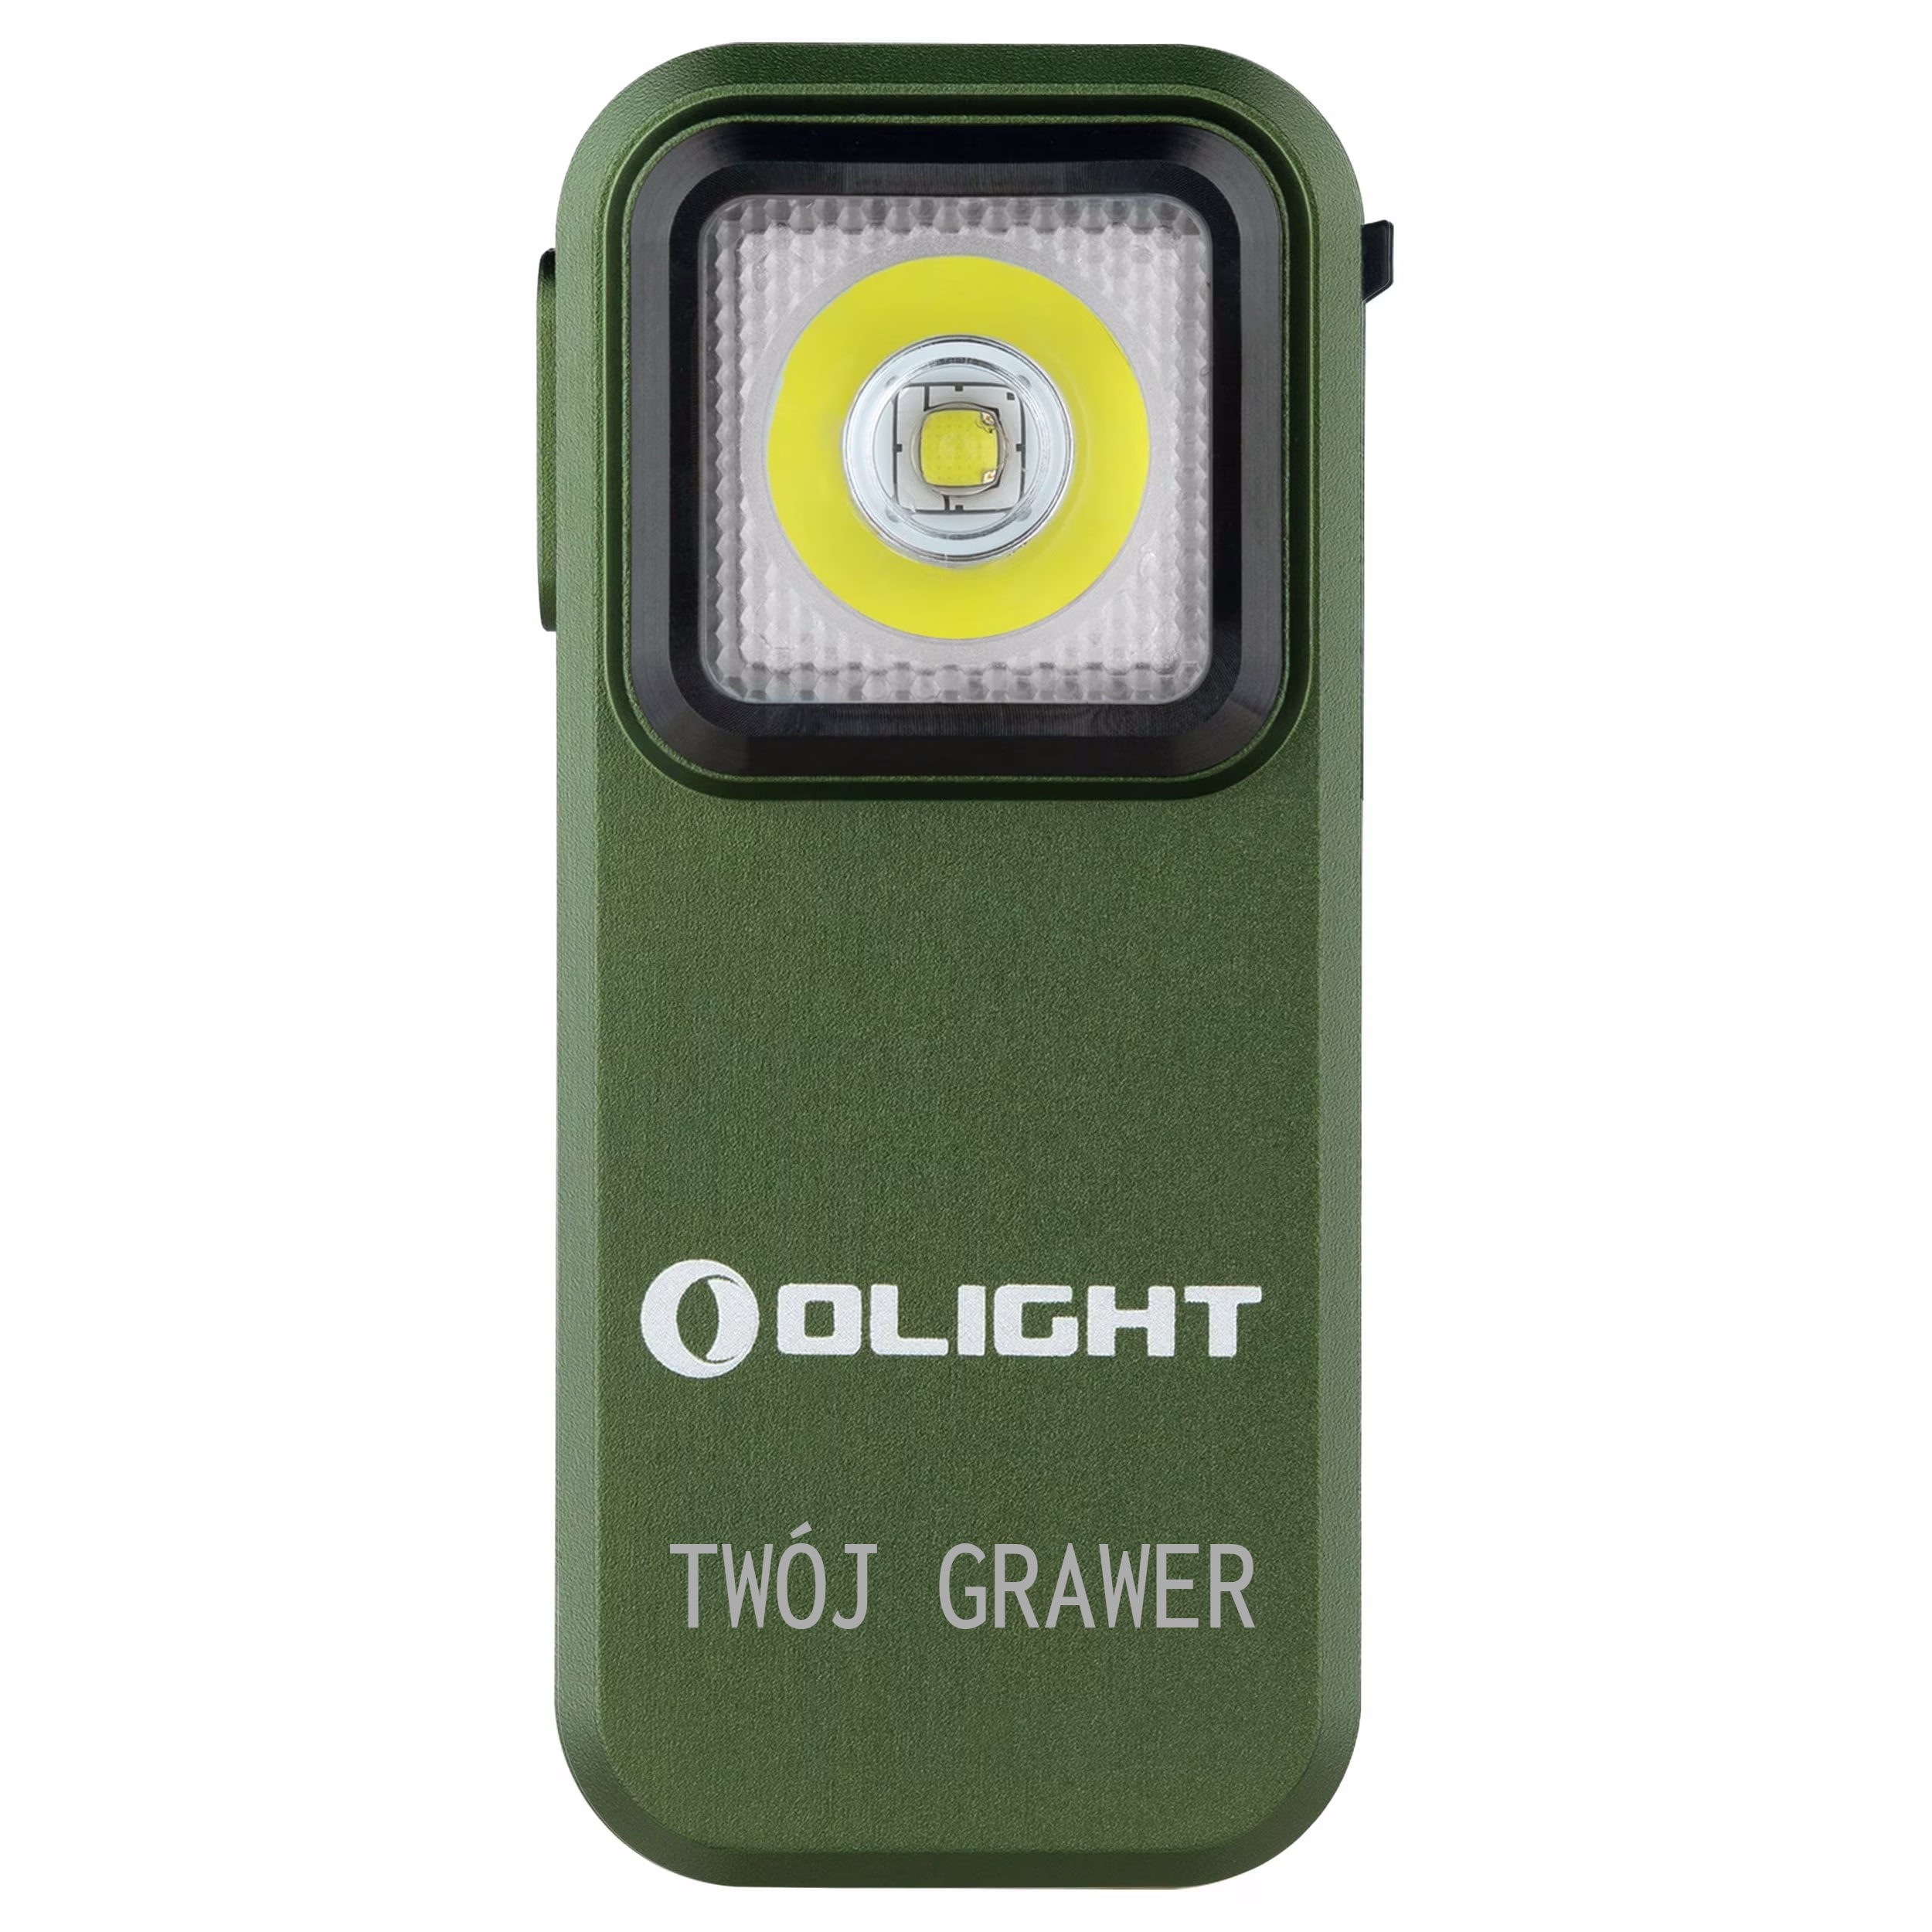 Акумуляторний ліхтарик Olight Oclip OD Green - 300 люменів